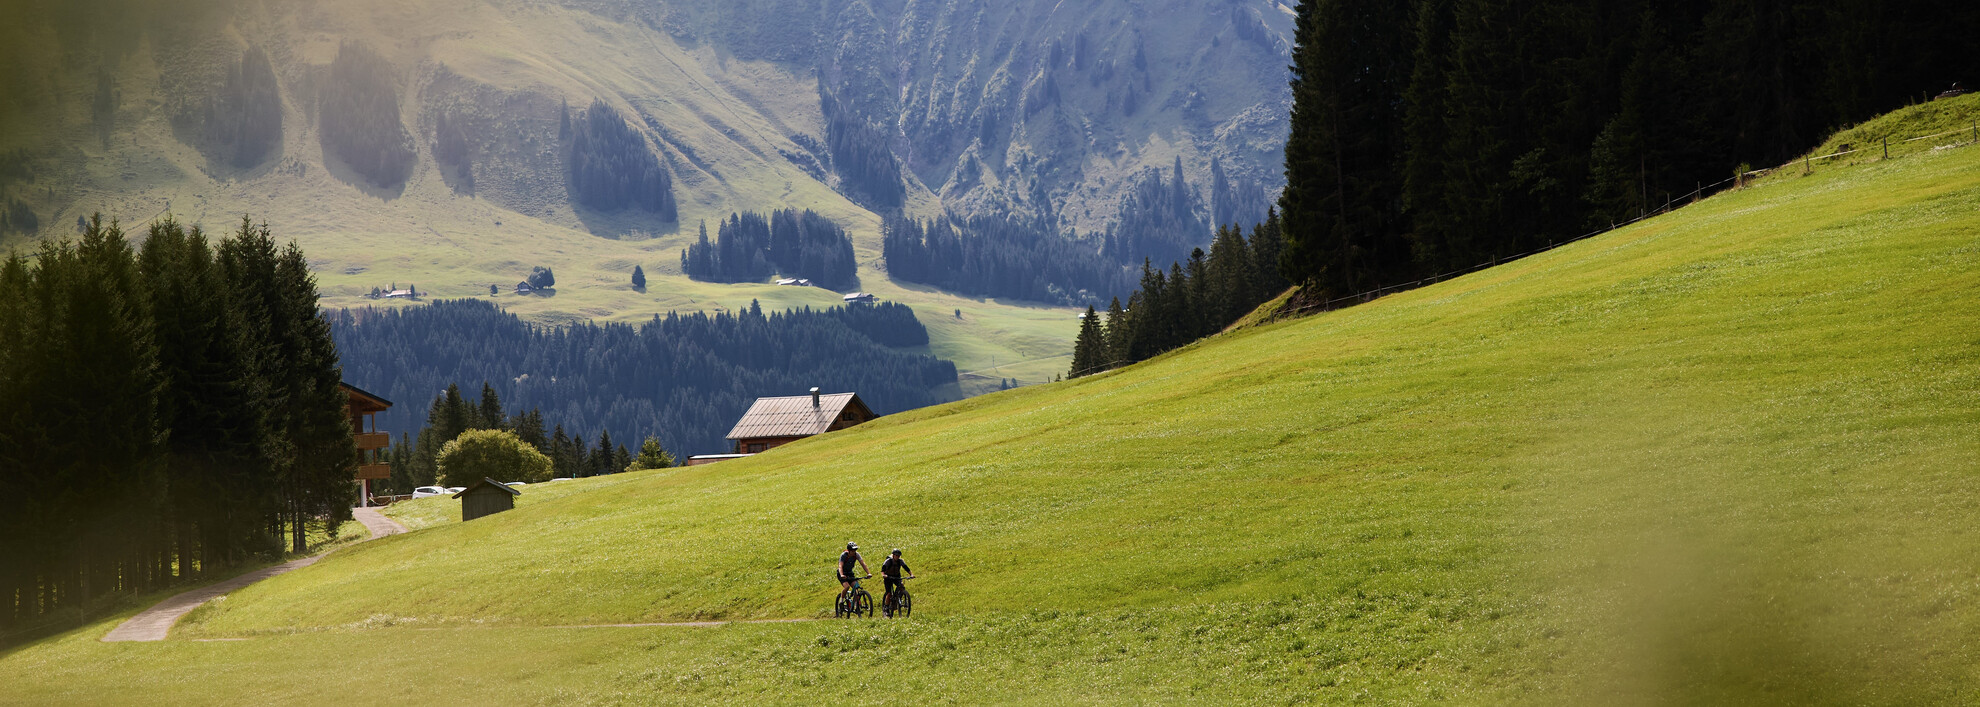 Mountainbiken | © Kleinwalsertal Tourismus | Photographer: Oliver Farys